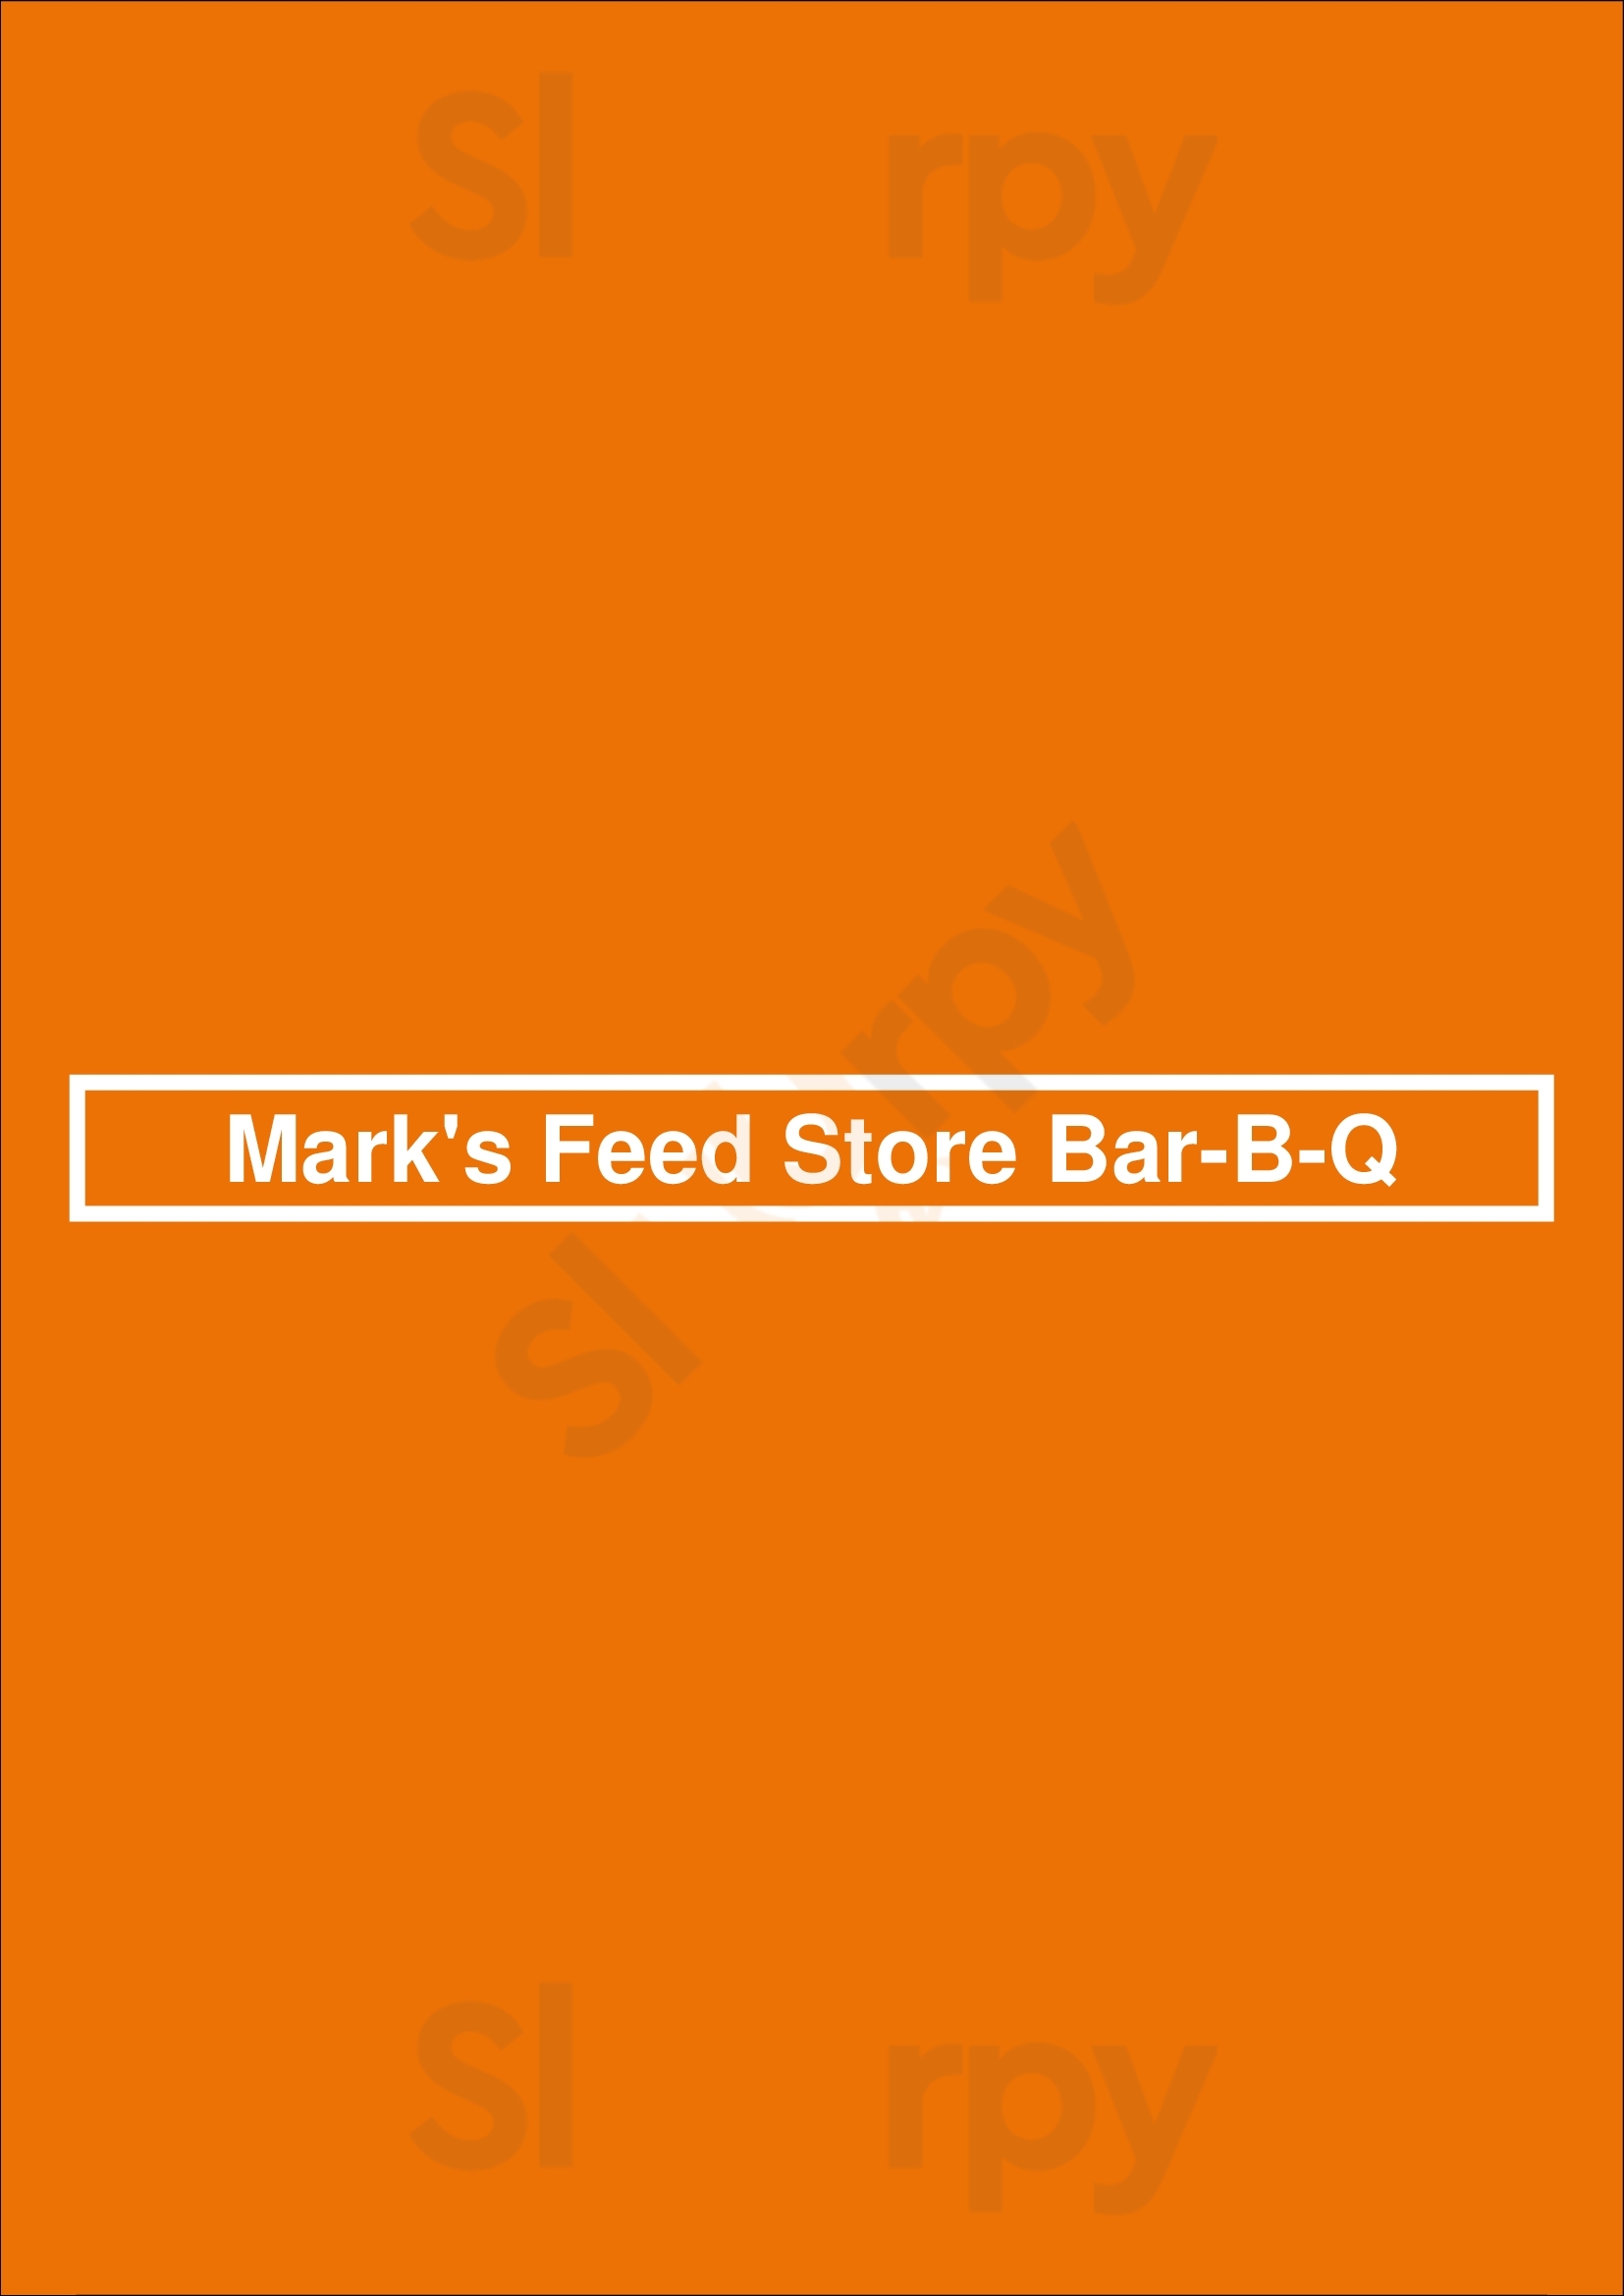 Mark's Feed Store Bar-b-q Louisville Menu - 1